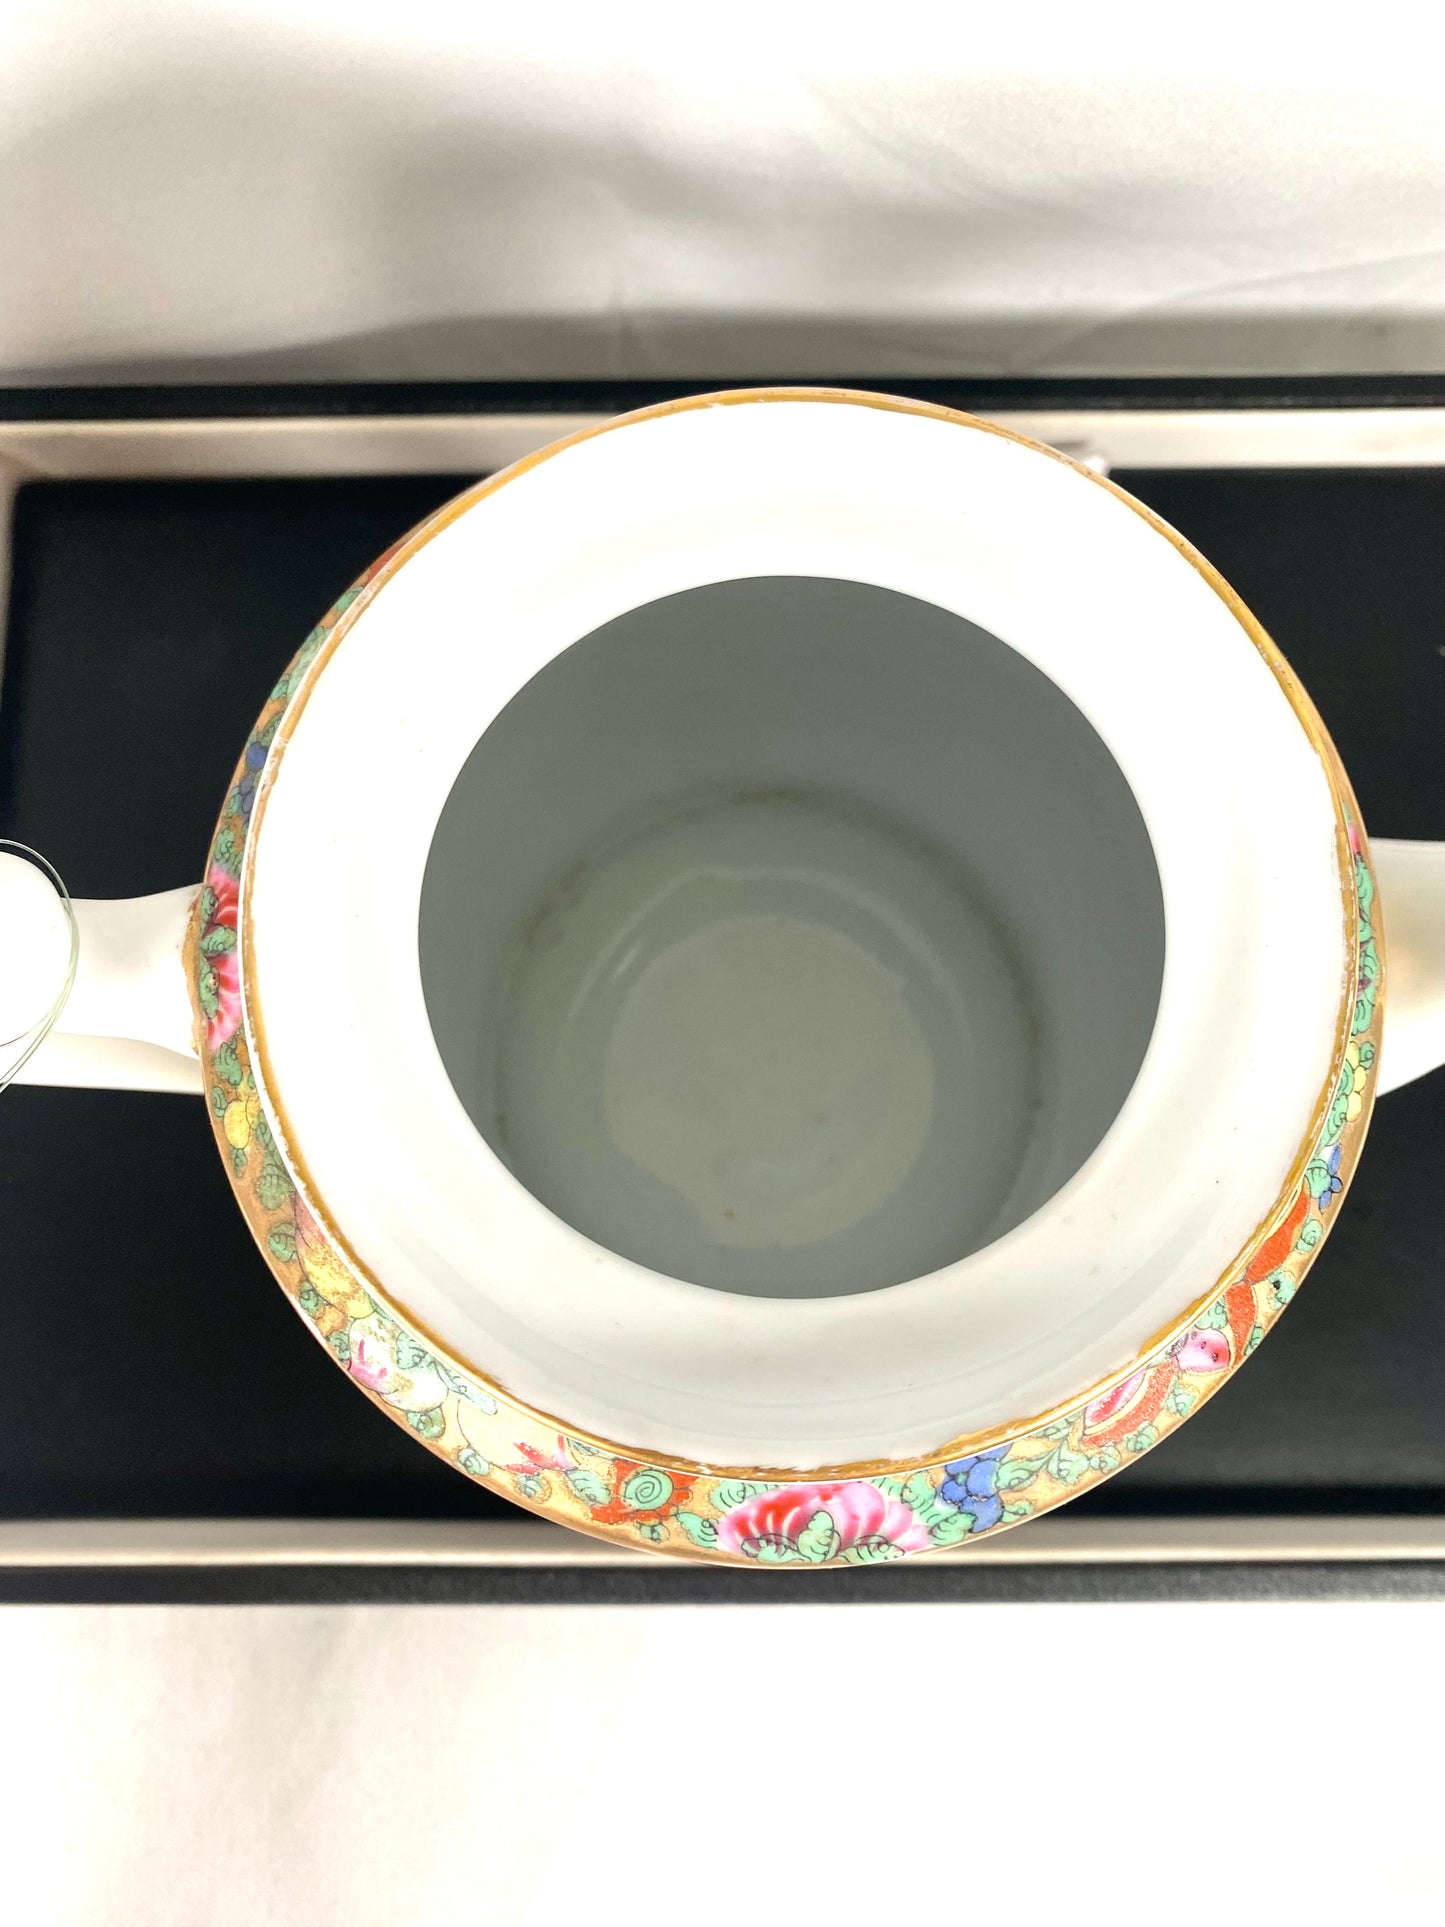 20 世纪中期中国古董茶壶，采用广式粉彩和丰富的镀金装饰